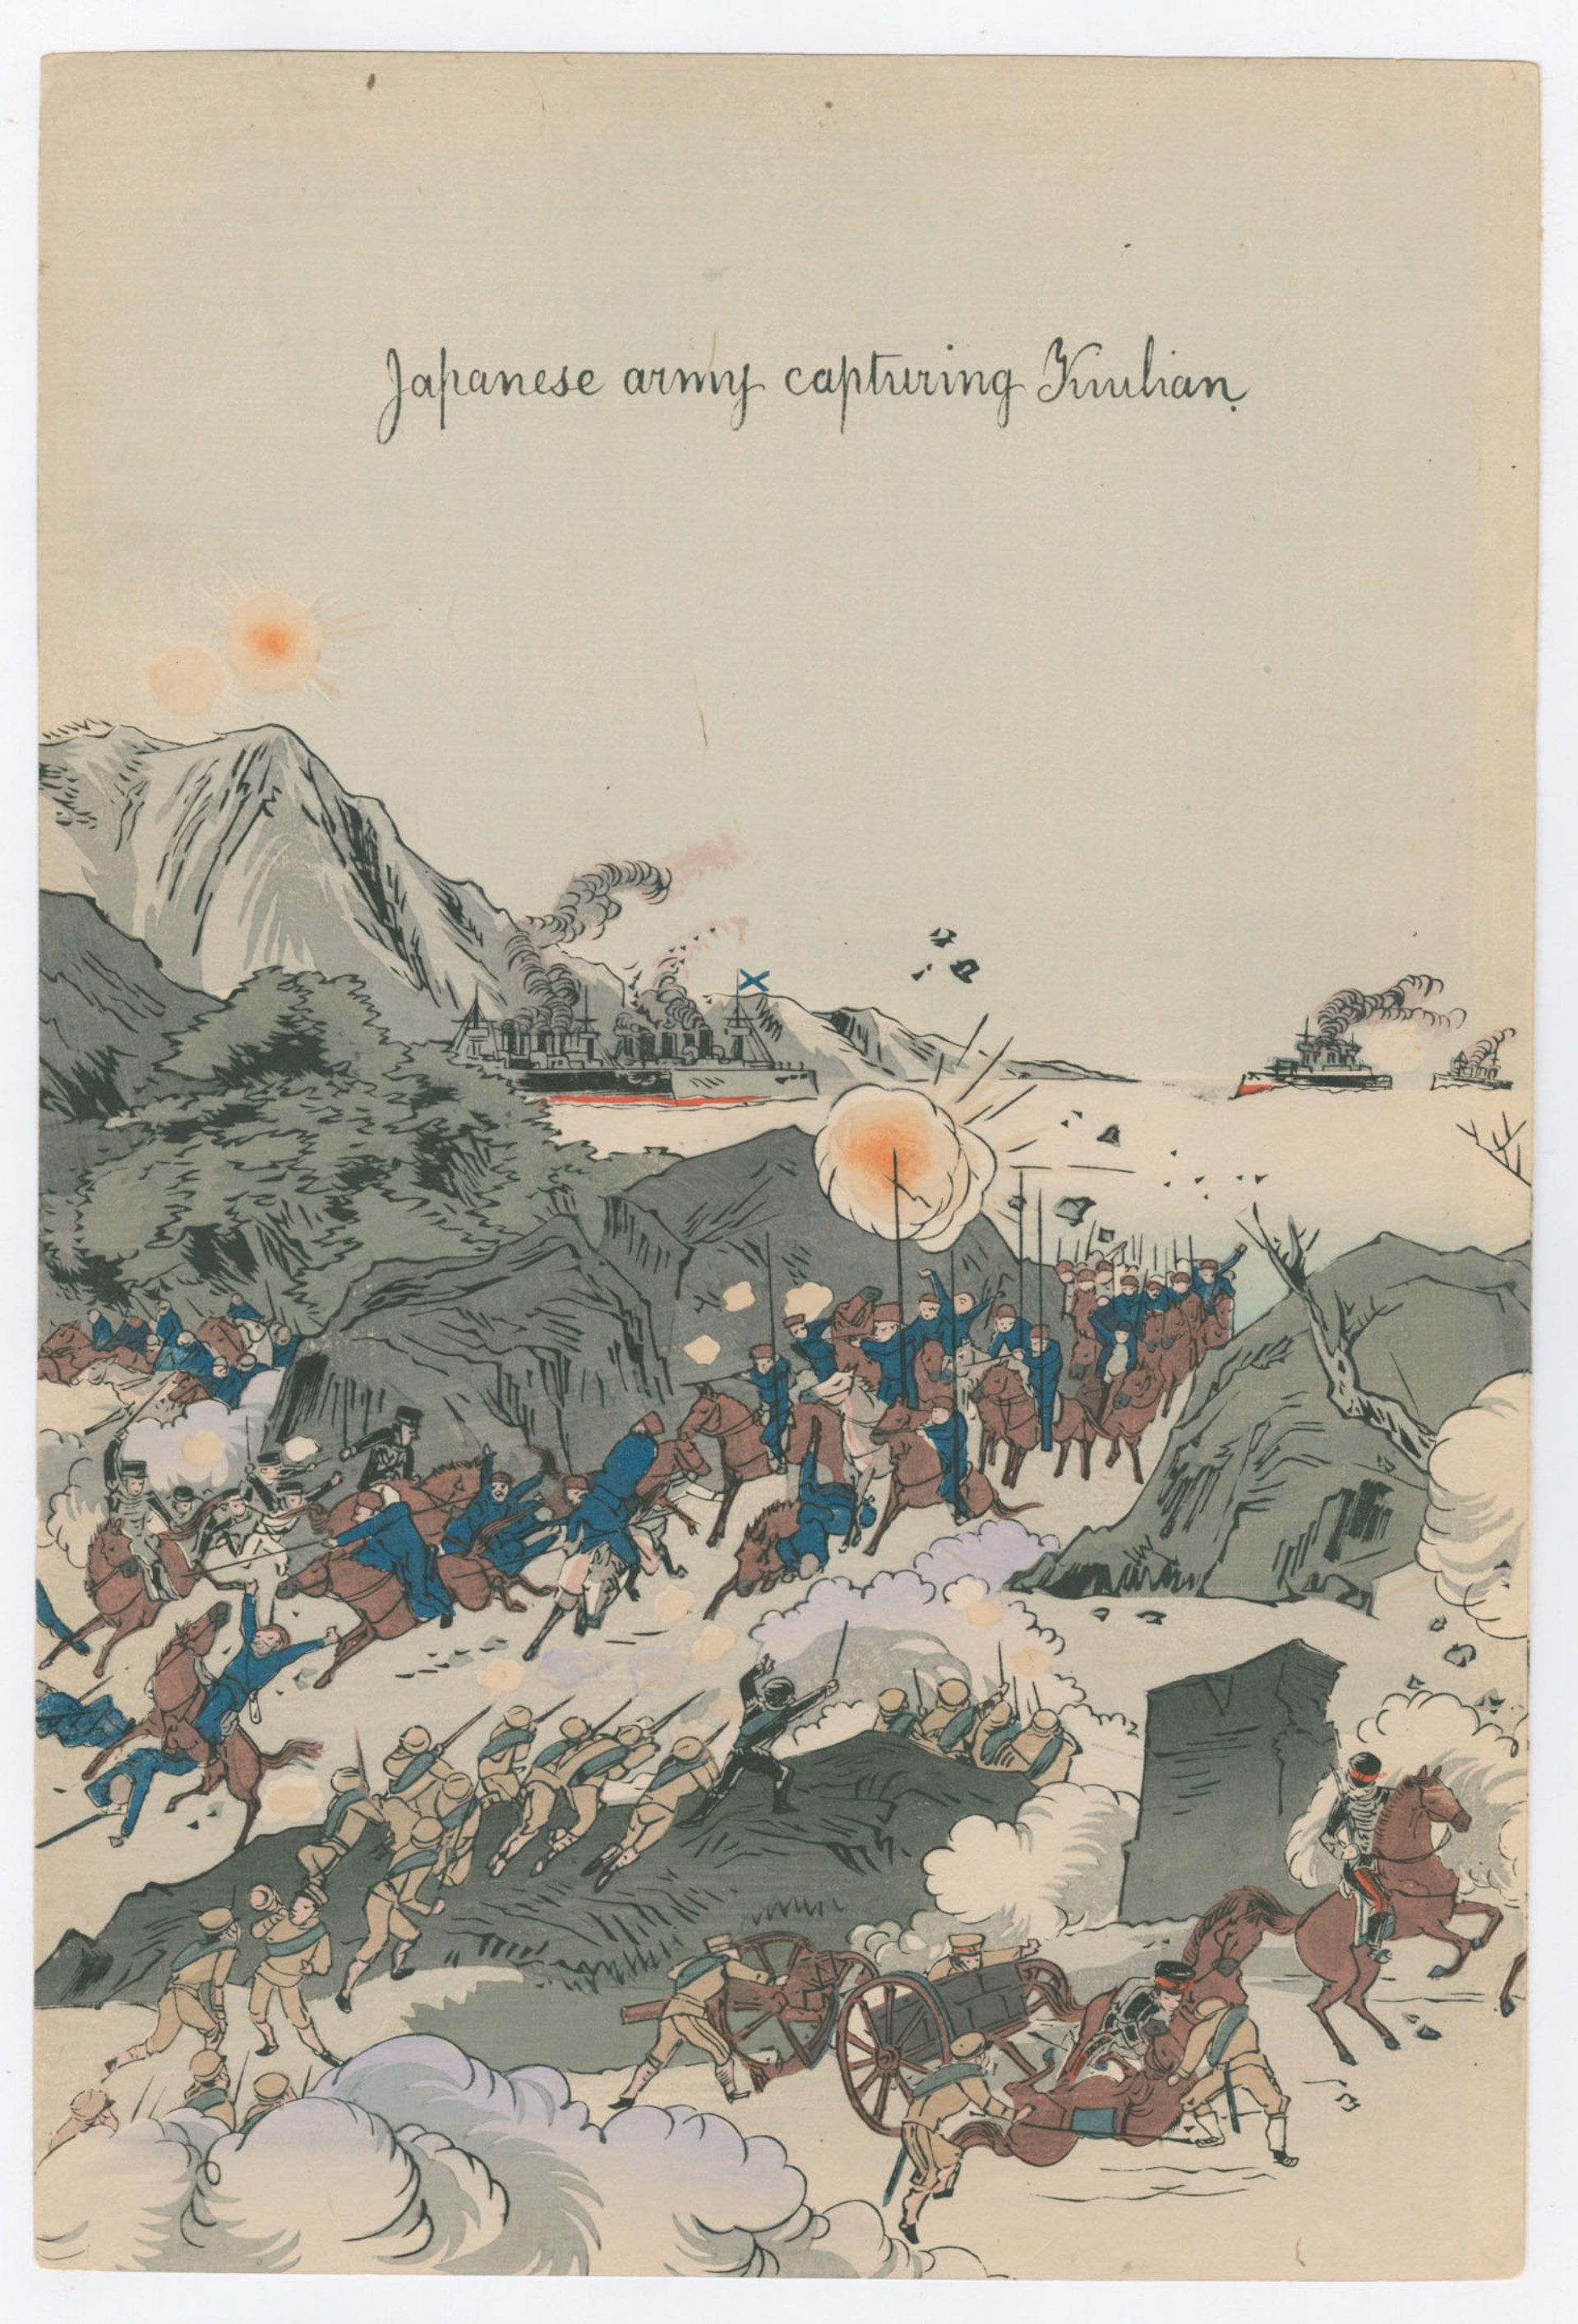 May 1, 1904 Our Army Occupied Jiu Liyu, Hushan and Jiuliancheng Russo - Japanese War by Kokunimasa